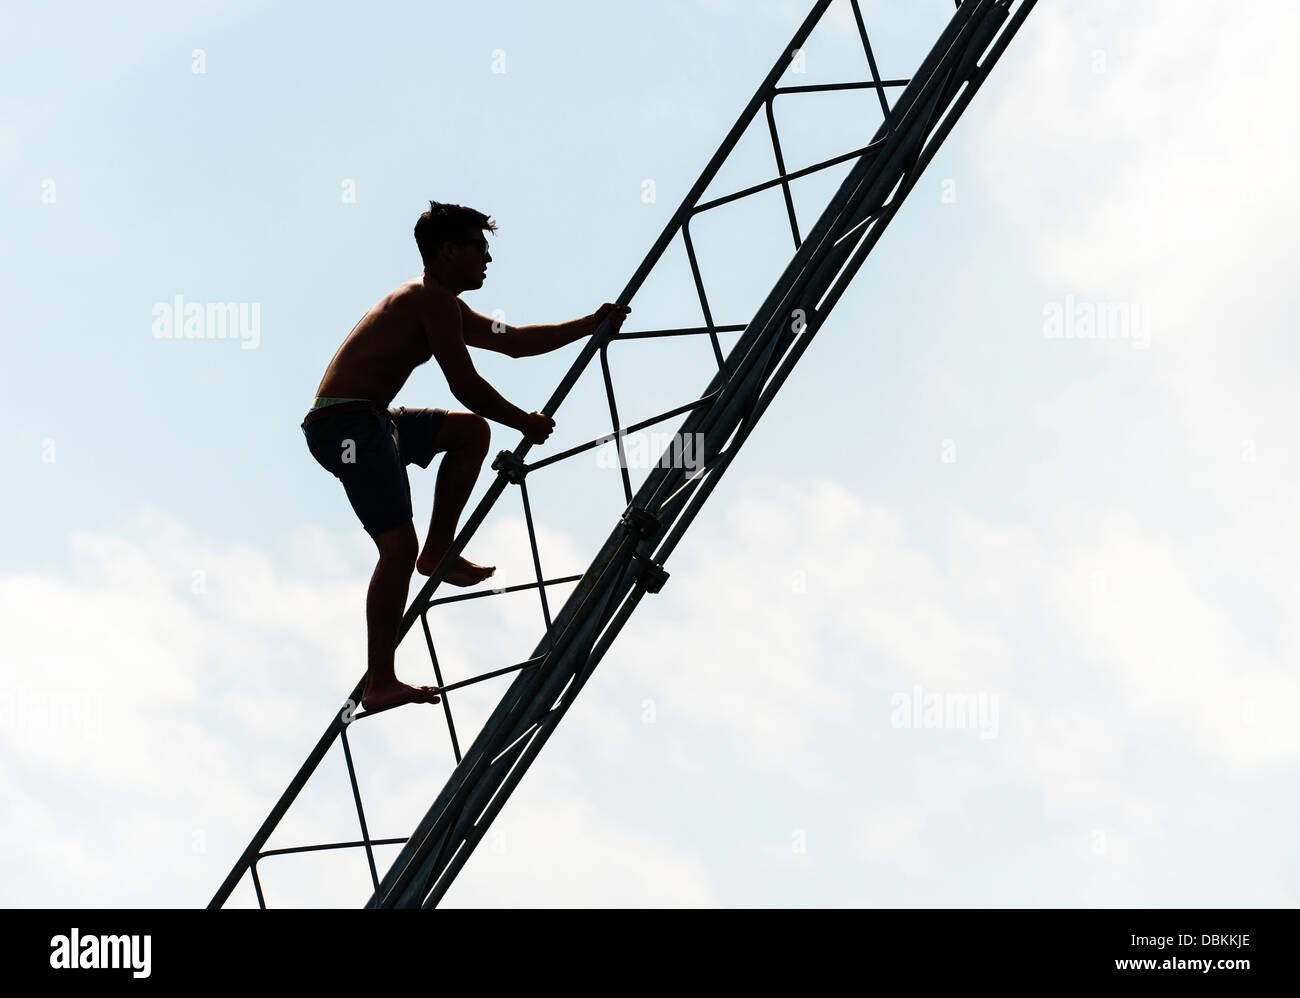 La silueta de un hombre subiendo un pilón. Foto de stock